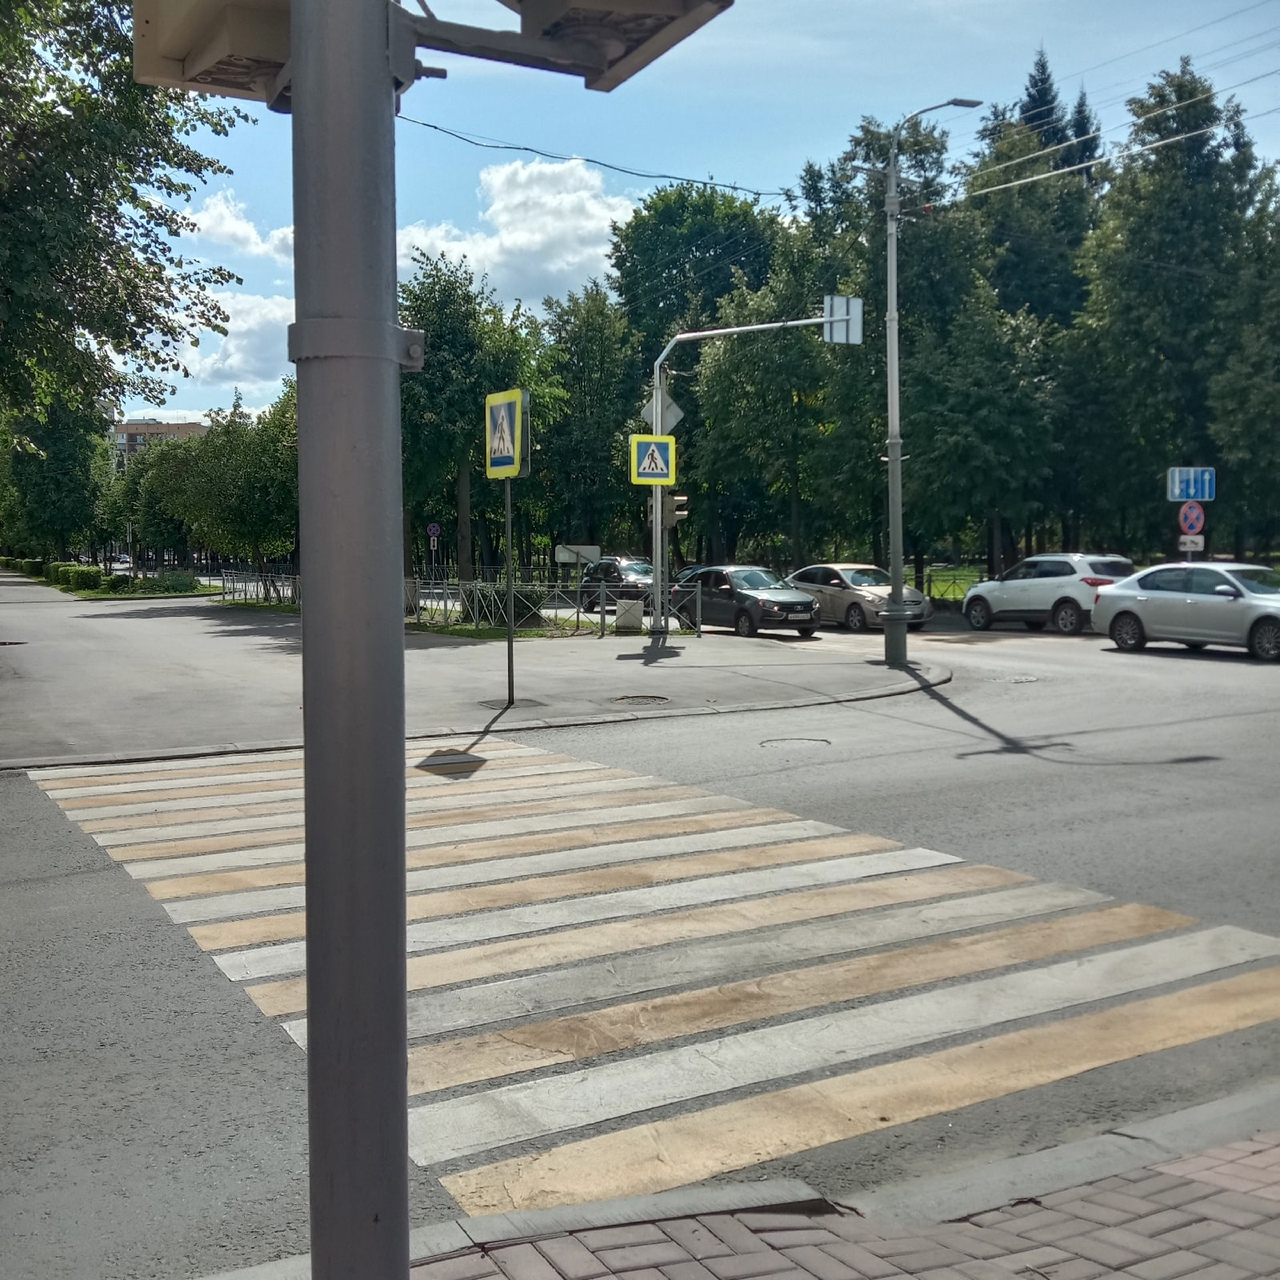 «Даже светофор невидно»: жители Йошкар-олы жалуются на расстановку дорожных знаков на улице Советская